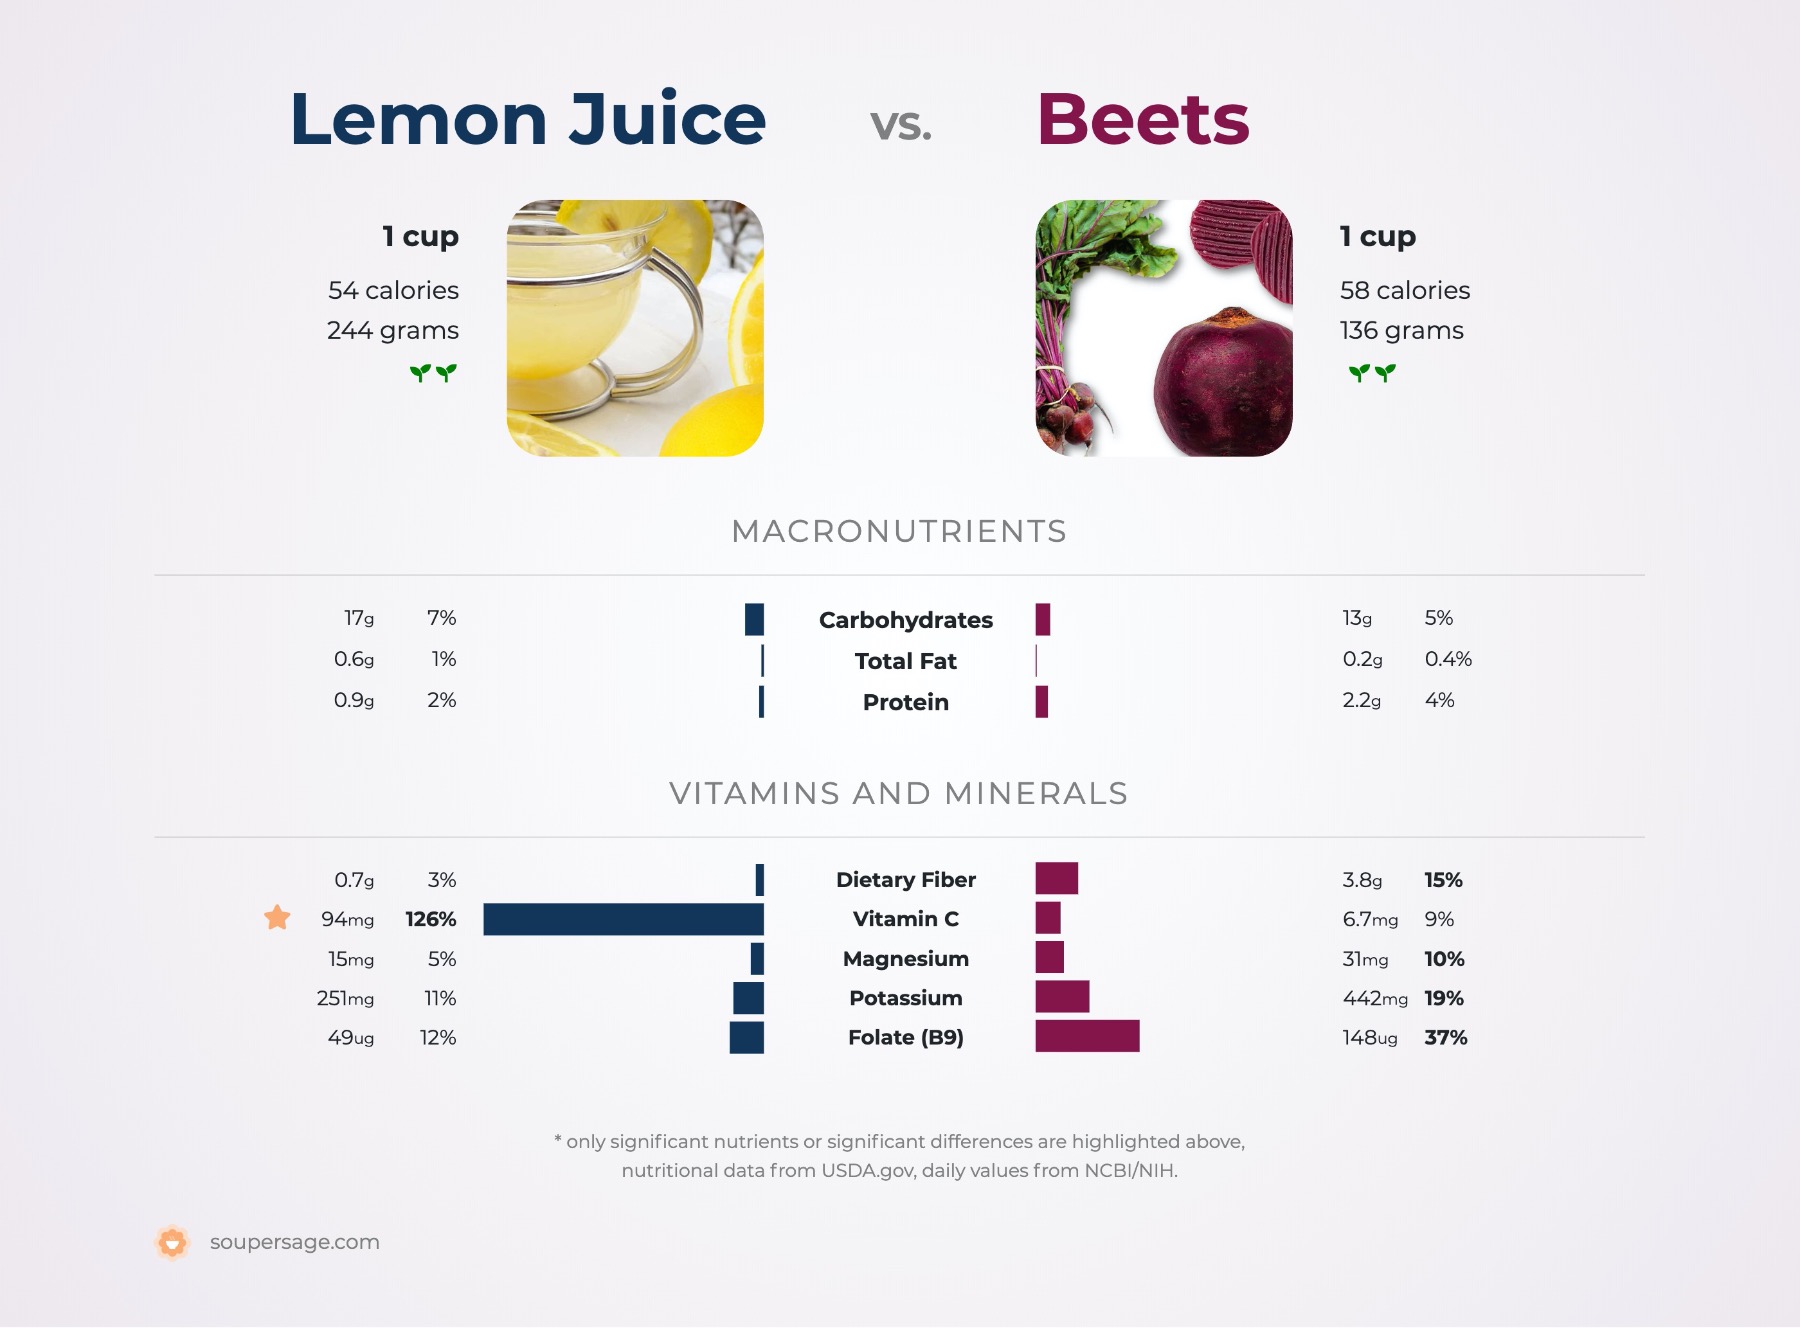 nutrition comparison of lemon juice vs. beets